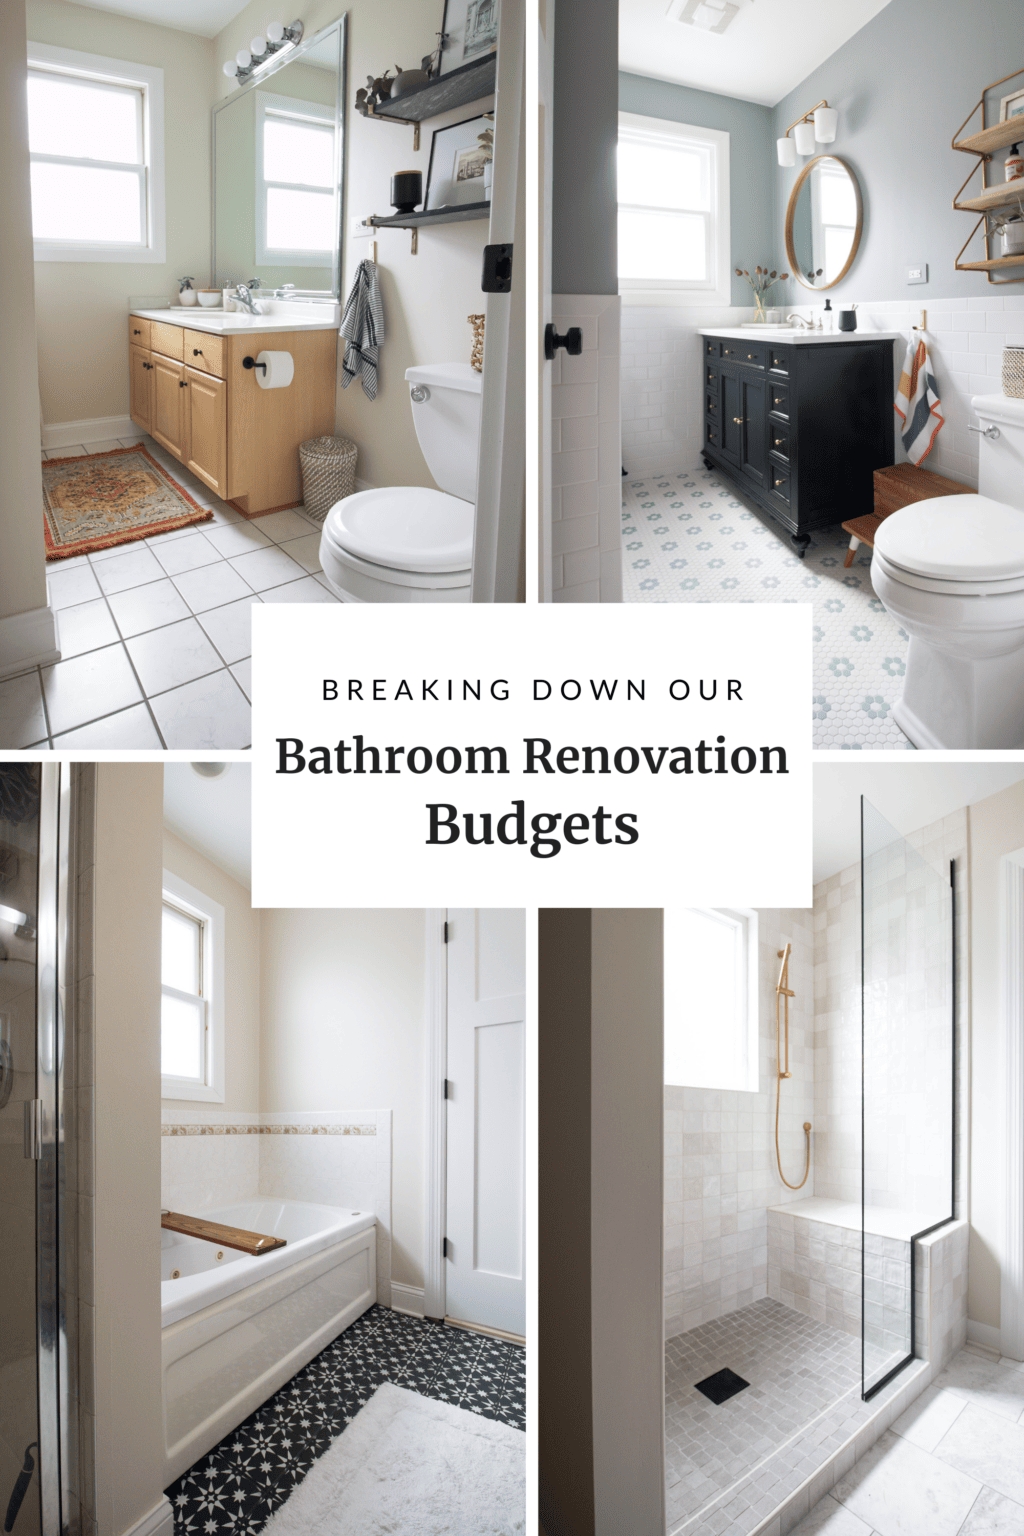 Our bathroom renovation budget